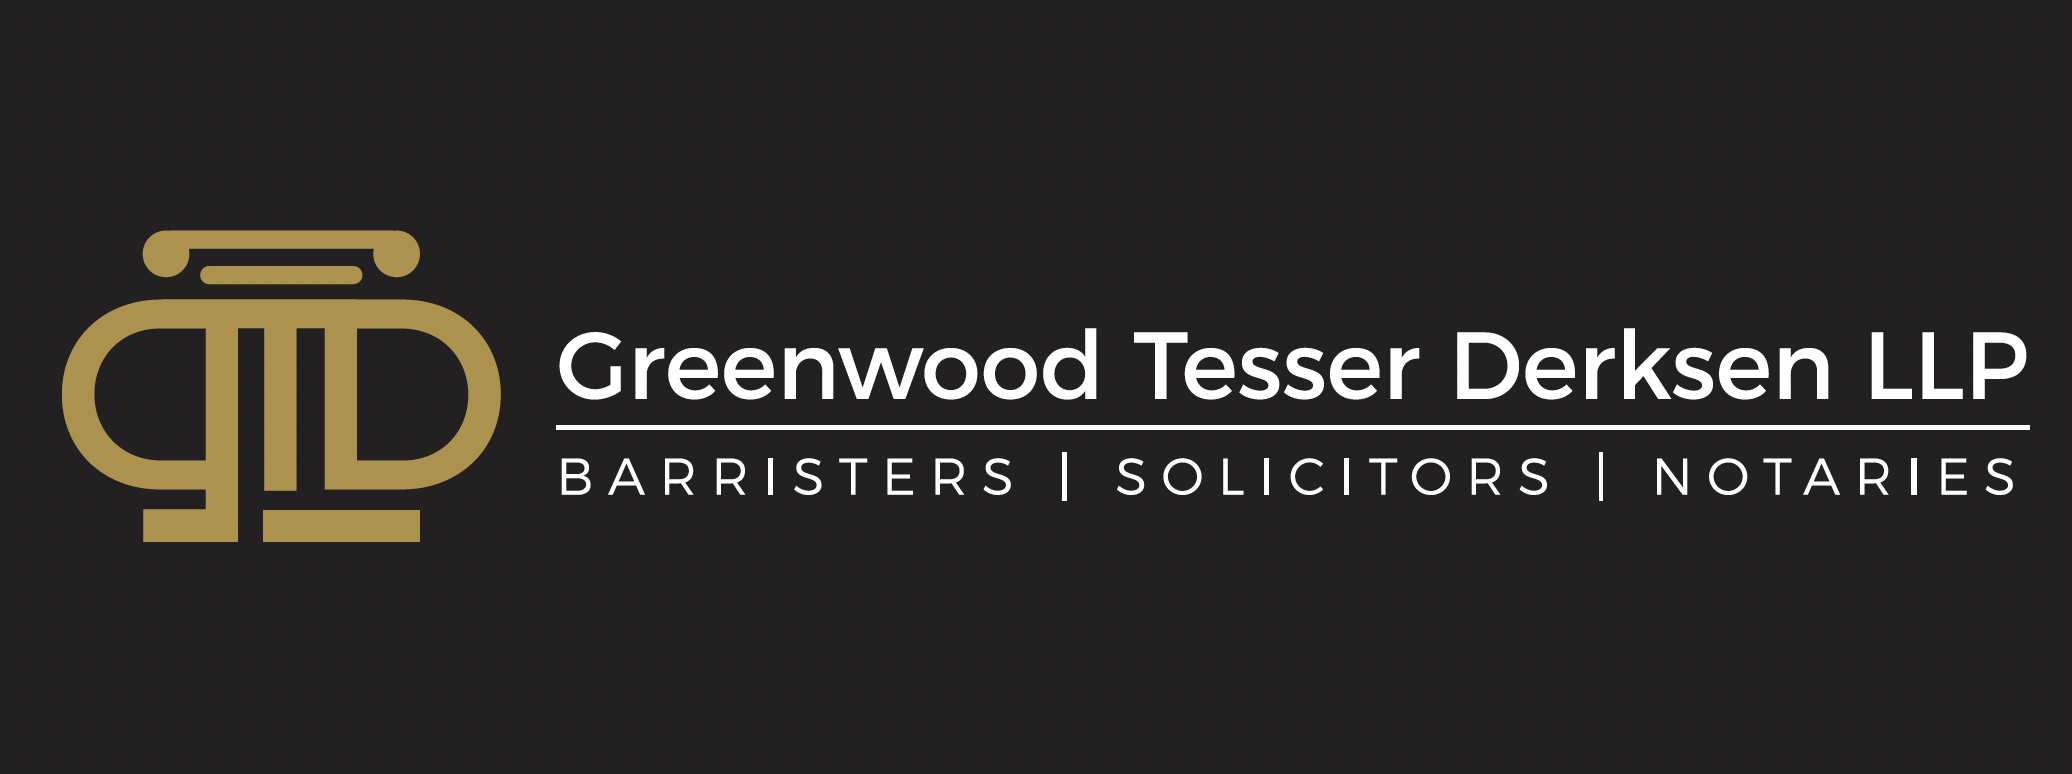 Greenwood Tesser Derksen Law Logo